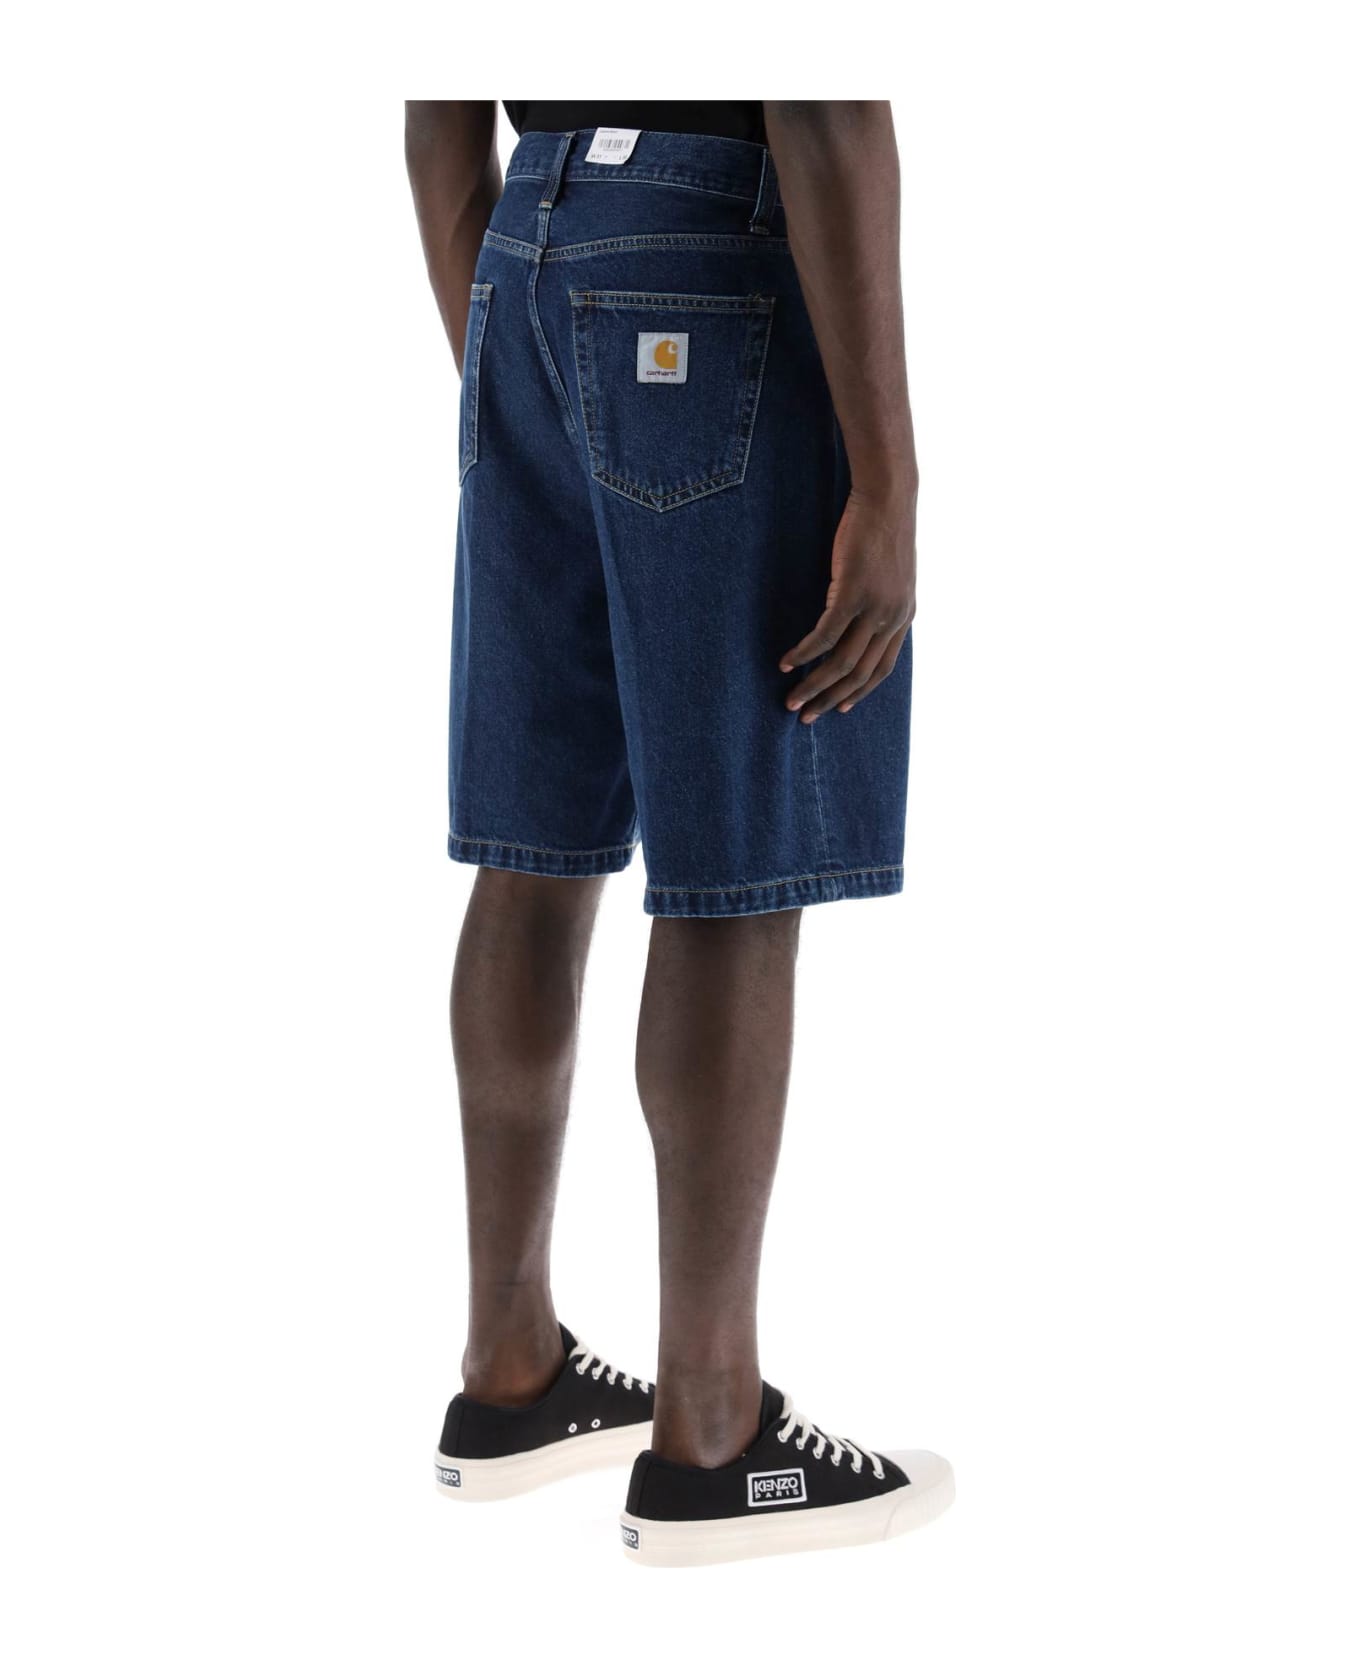 Carhartt Landon Denim Shorts - BLUE (Blue)